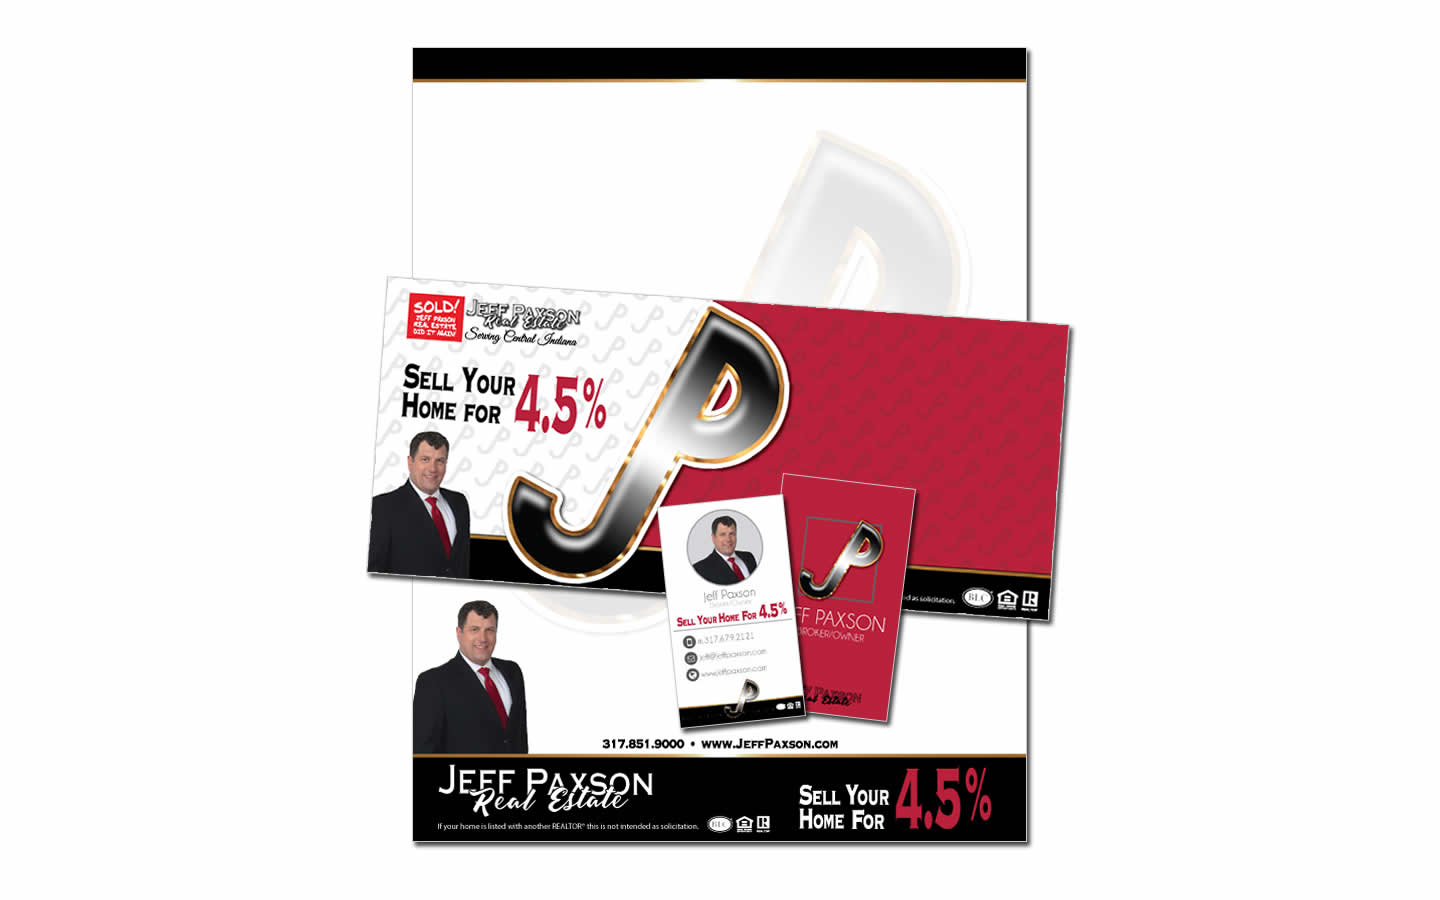 envelopes letterhead business cards print media